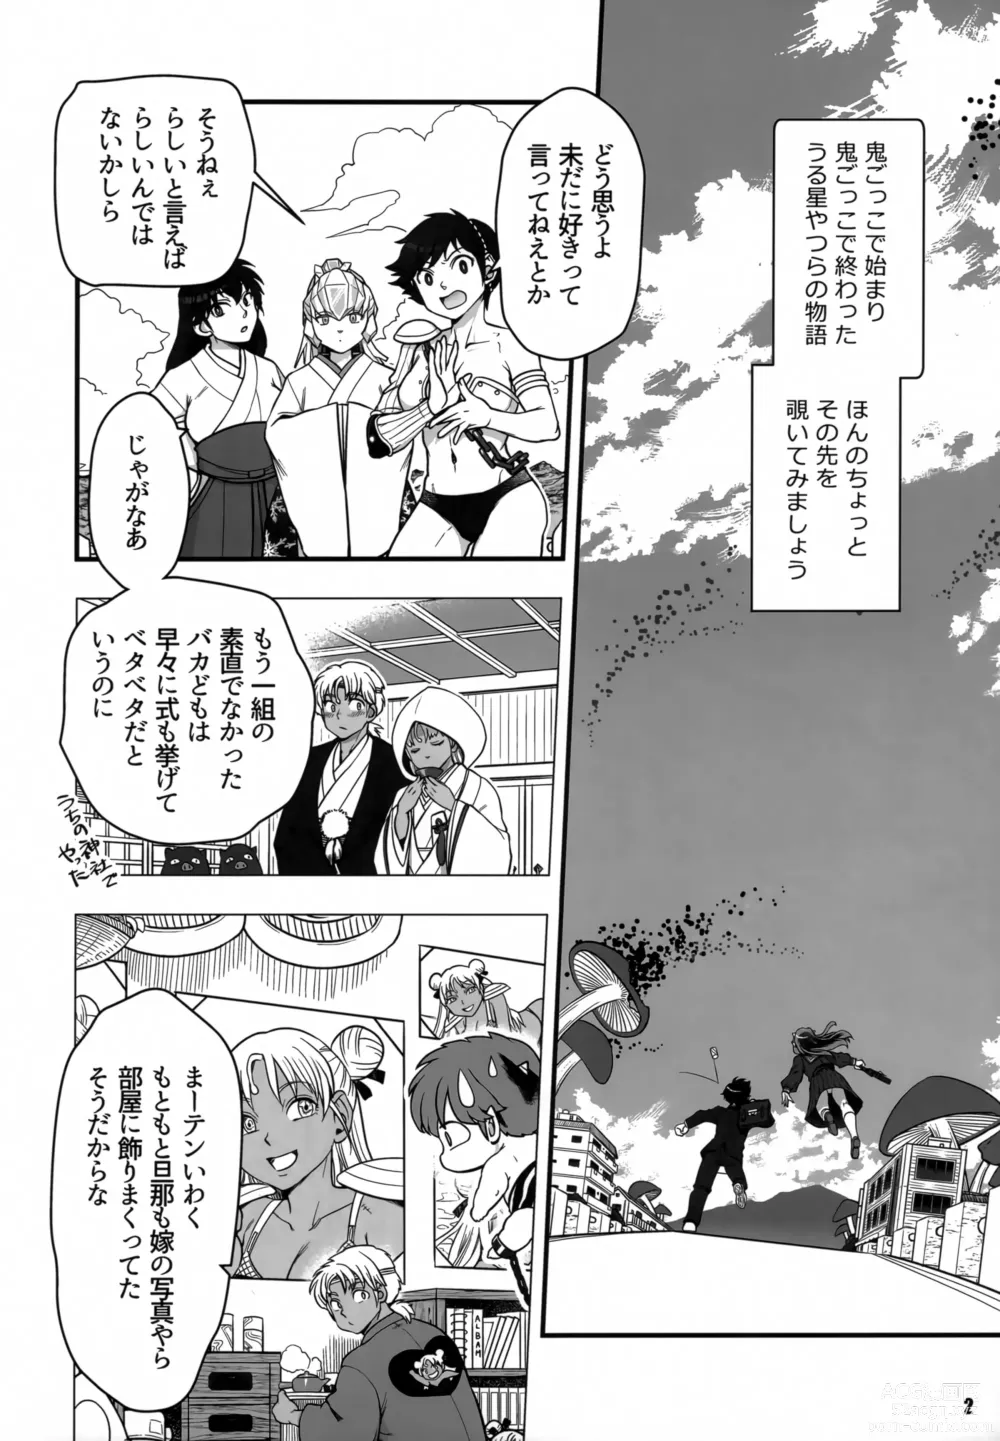 Page 2 of doujinshi Urusei Yatsura Epilogue of Boy meets Girl